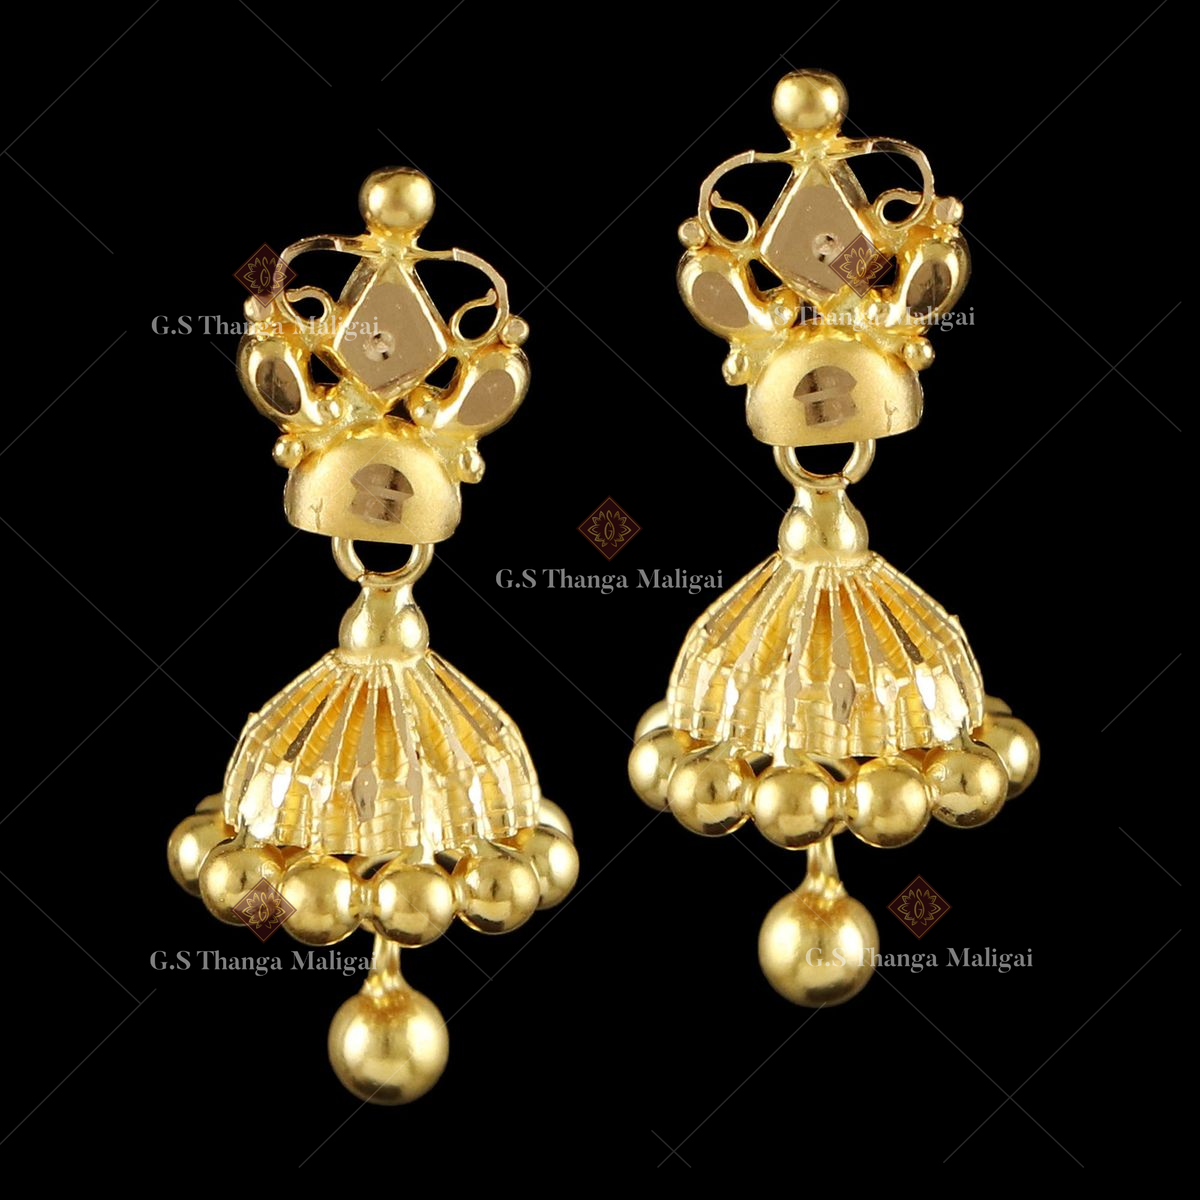 3 Gram Gold Earrings - Buy 3 Gram Gold Earrings online at Best Prices in  India | Flipkart.com